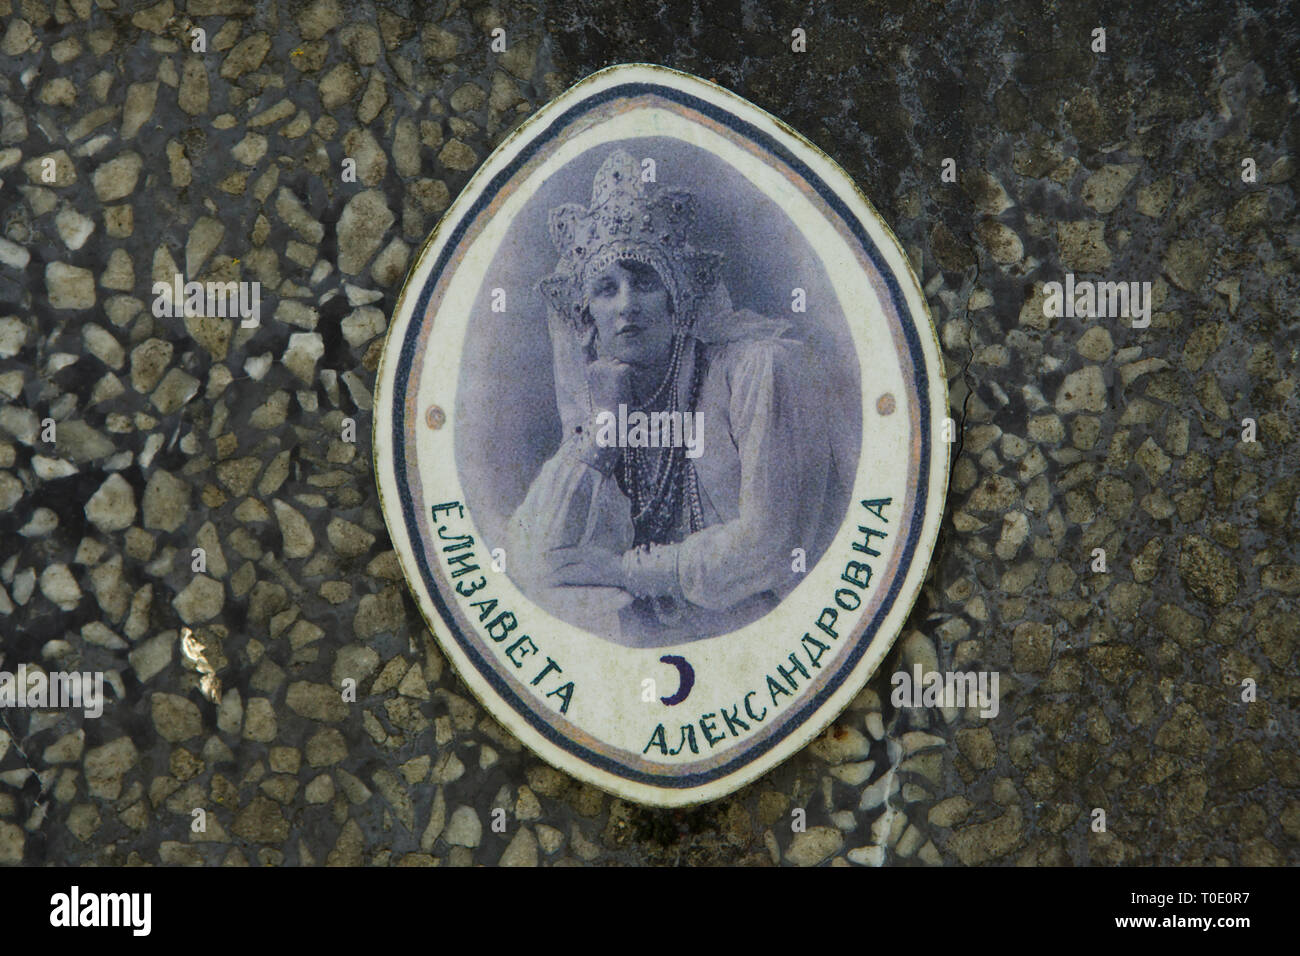 Foto von russischen Emigranten Yelizaveta Dubentseva auf Ihrem Grabstein auf dem Russischen Friedhof in Sainte-Geneviève-des-Bois (Saint-Florent-le-Vieil Russe de Sainte-Geneviève-des-Bois) in der Nähe von Paris, Frankreich. Yelizaveta Dubentseva, geb. Antonovskaya, wurde am 22. Oktober 1901 geboren, verließ Russland im Alter von ungefähr 20, verbrachte mehr als ein halbes Jahrhundert im Exil und starb im Alter von 81 am 30. September 1983. Yelizaveta Dubentseva dargestellt ist eine traditionelle russische Kopfbedeckung namens kokoshnik gekleidet. Stockfoto